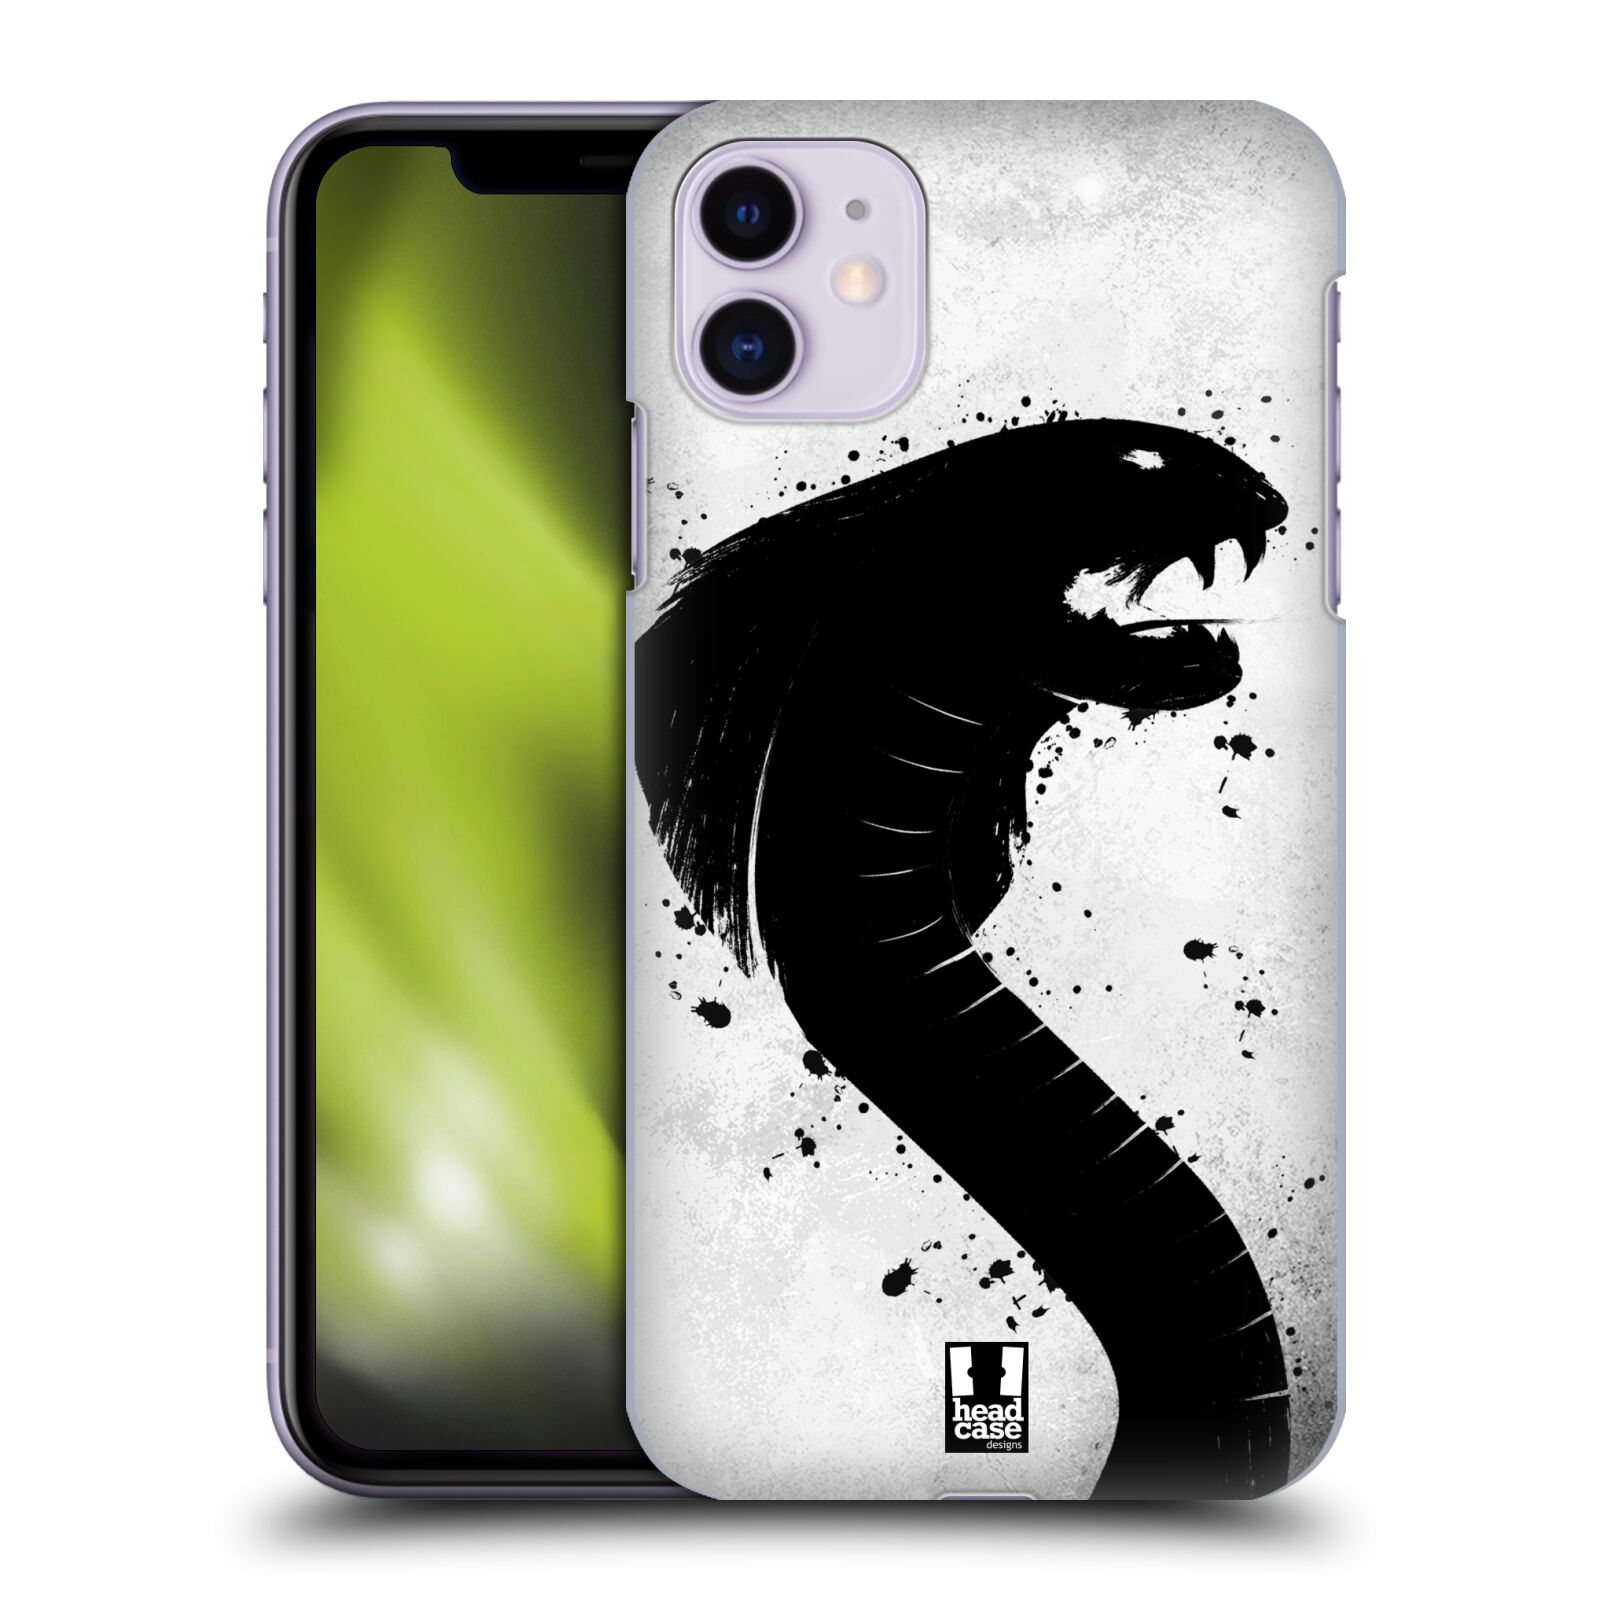 Pouzdro na mobil Apple Iphone 11 - HEAD CASE - vzor Kresba tuš zvíře had kobra